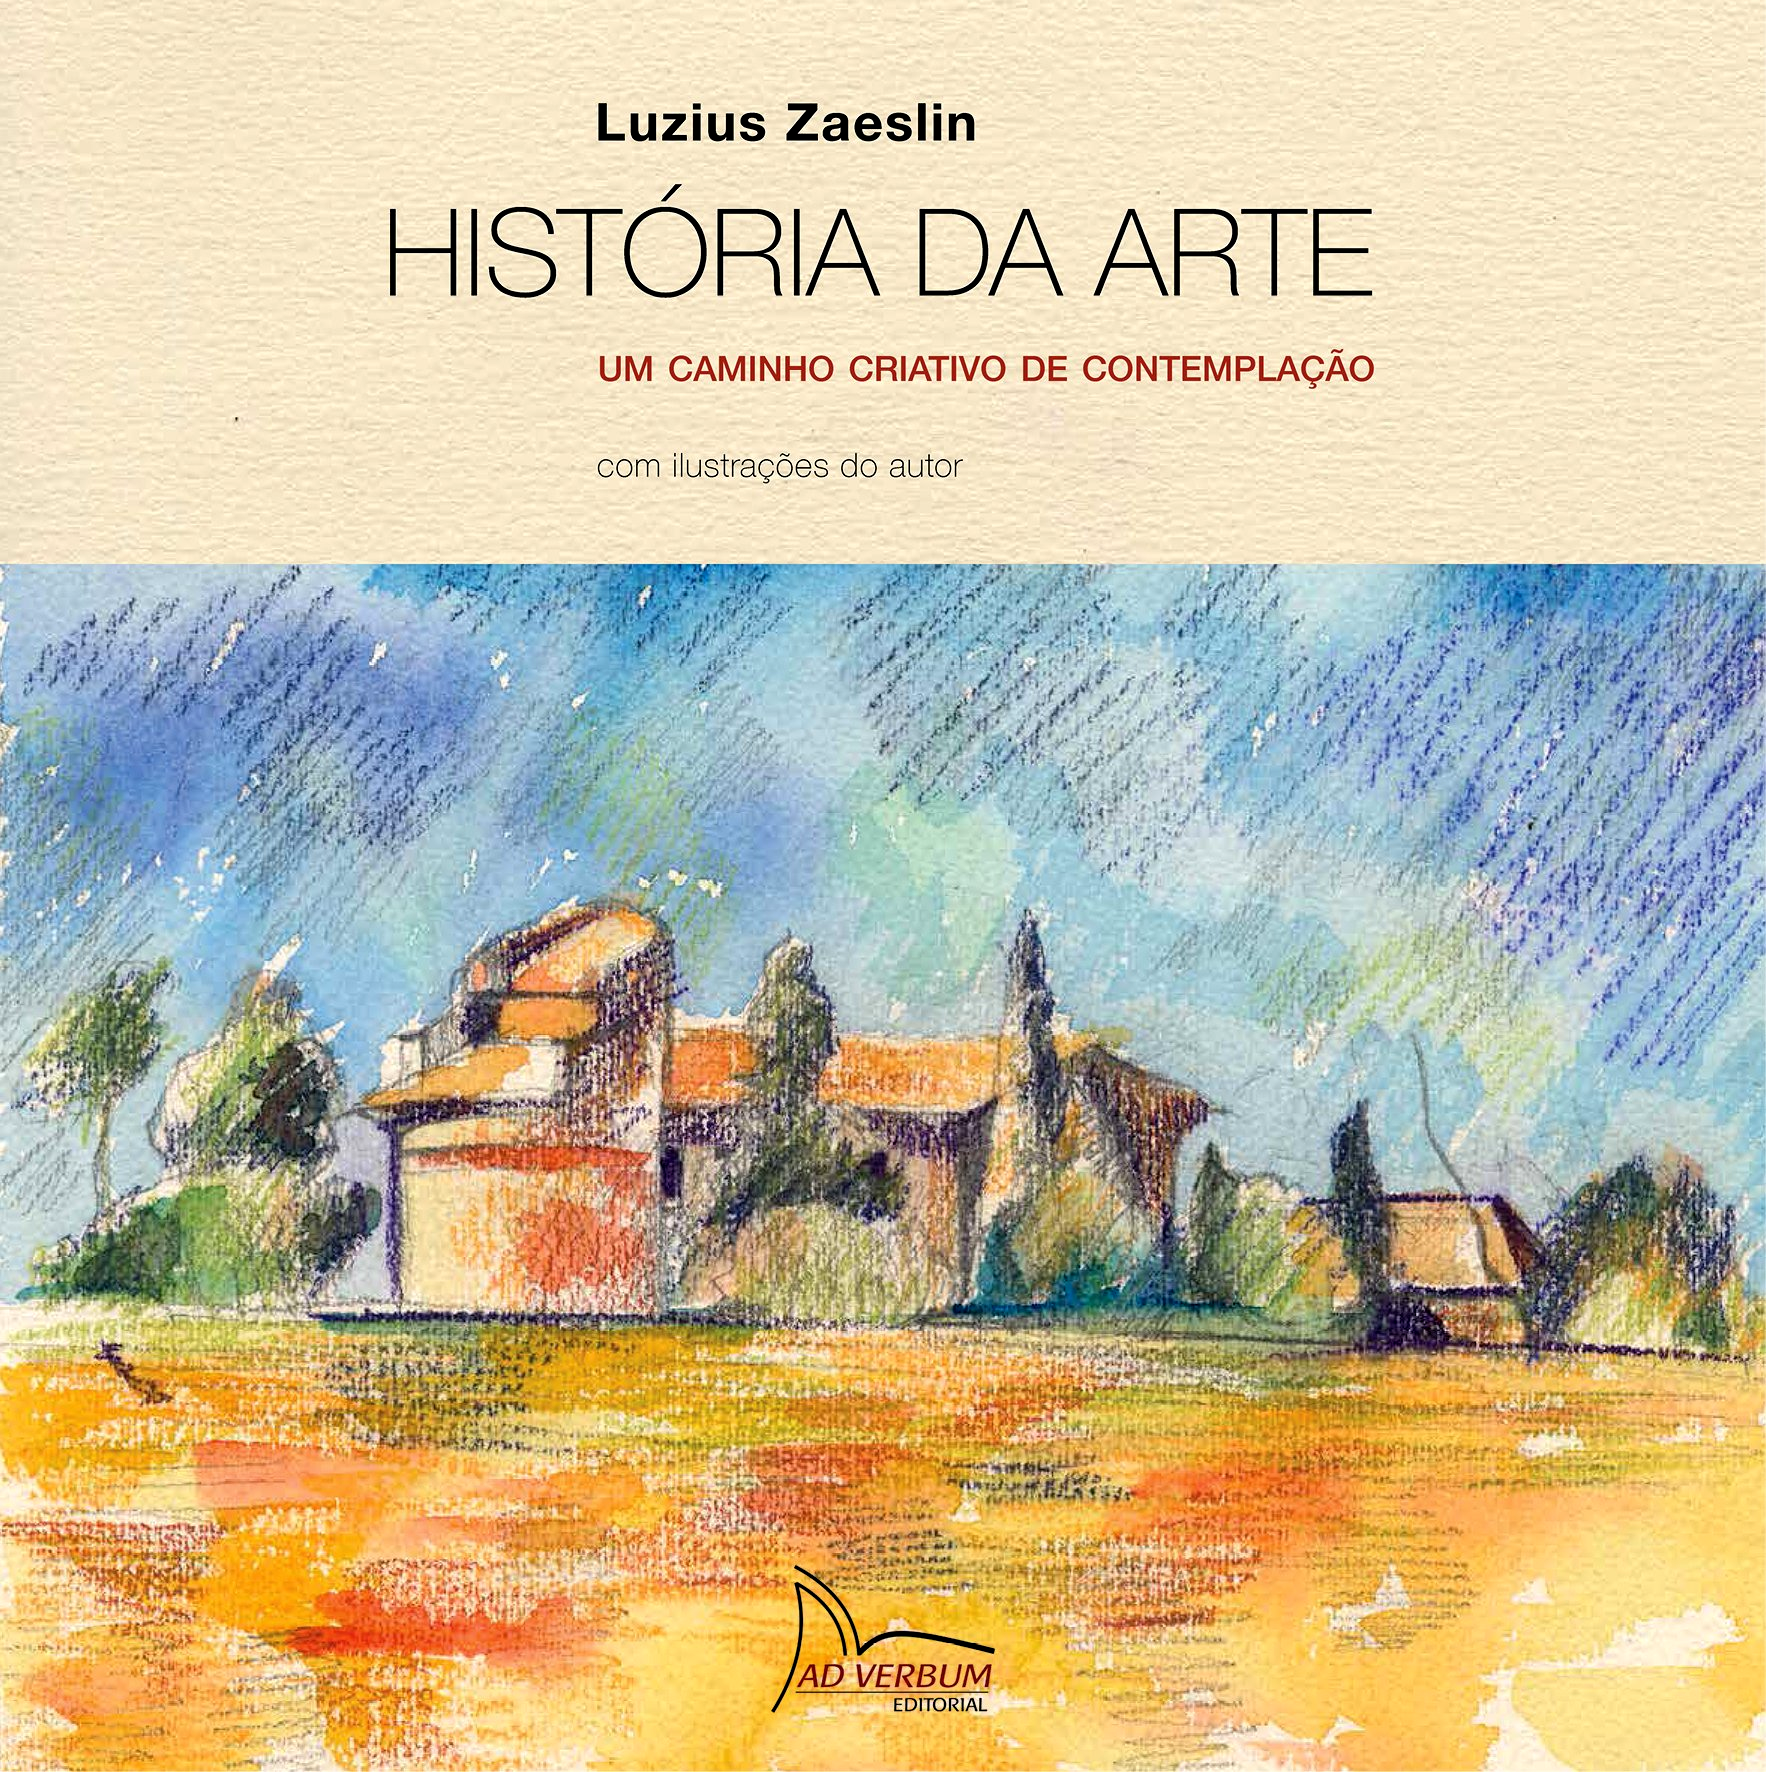 HISTÓRIA DA ARTE - Luzius Zaeslin